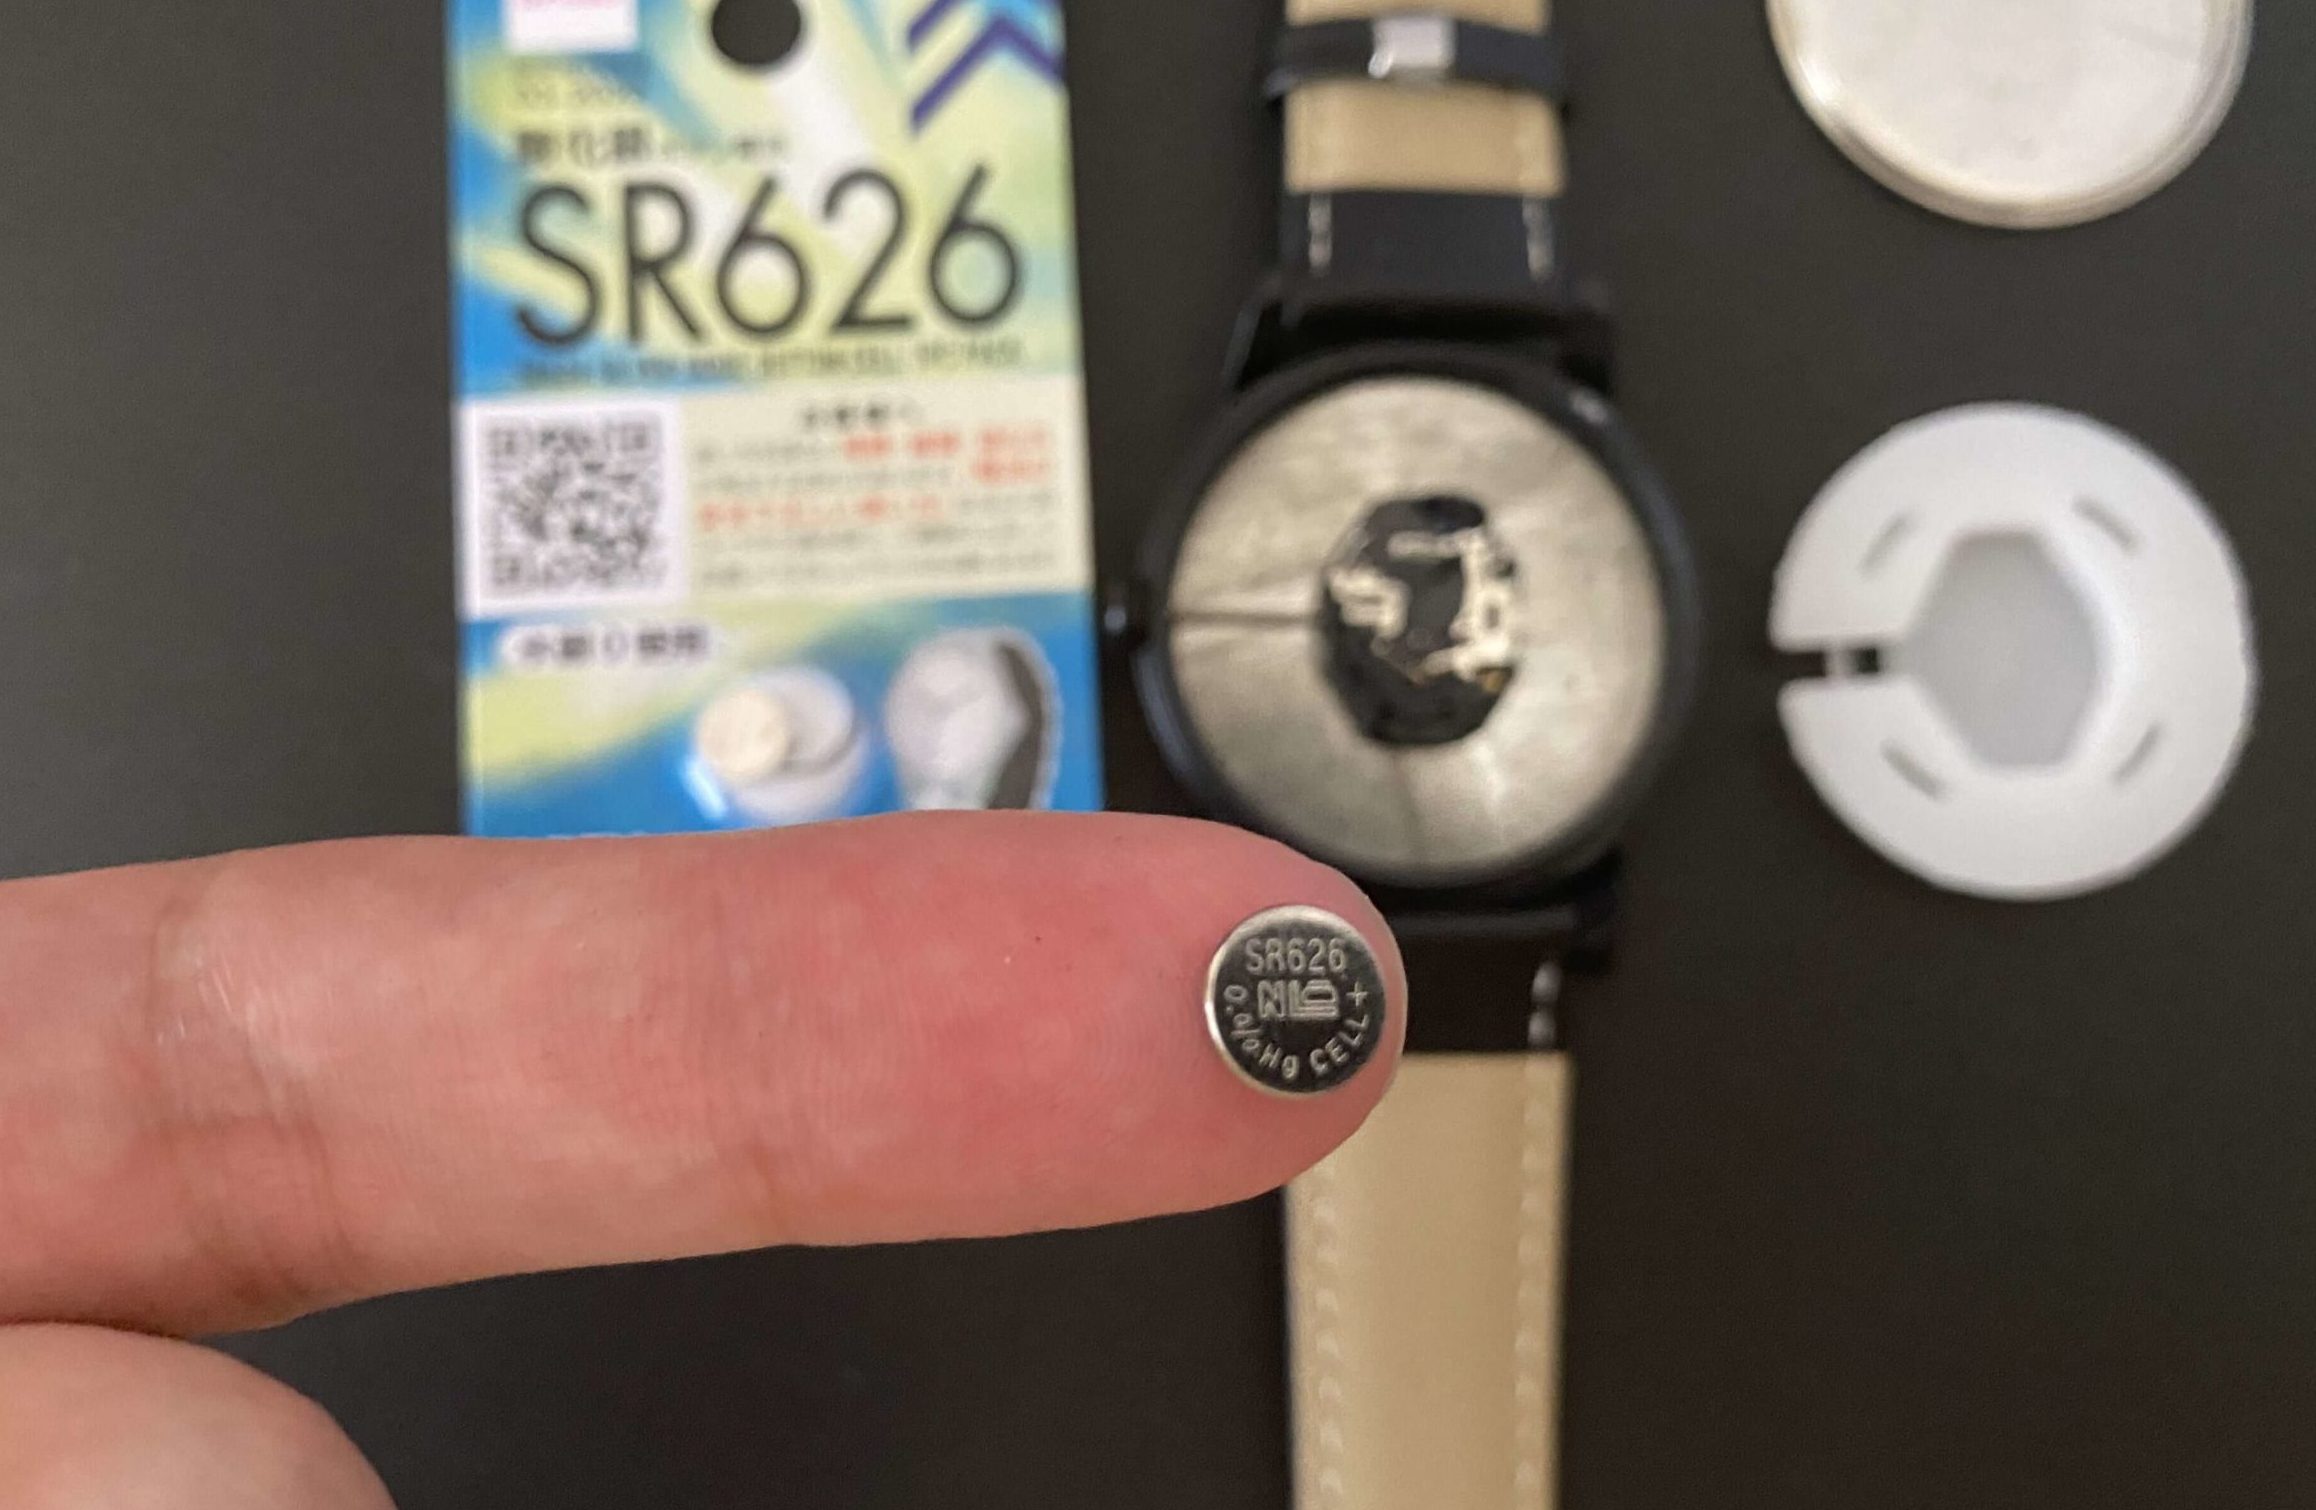 ダイソー腕時計から取り出したSR626SW